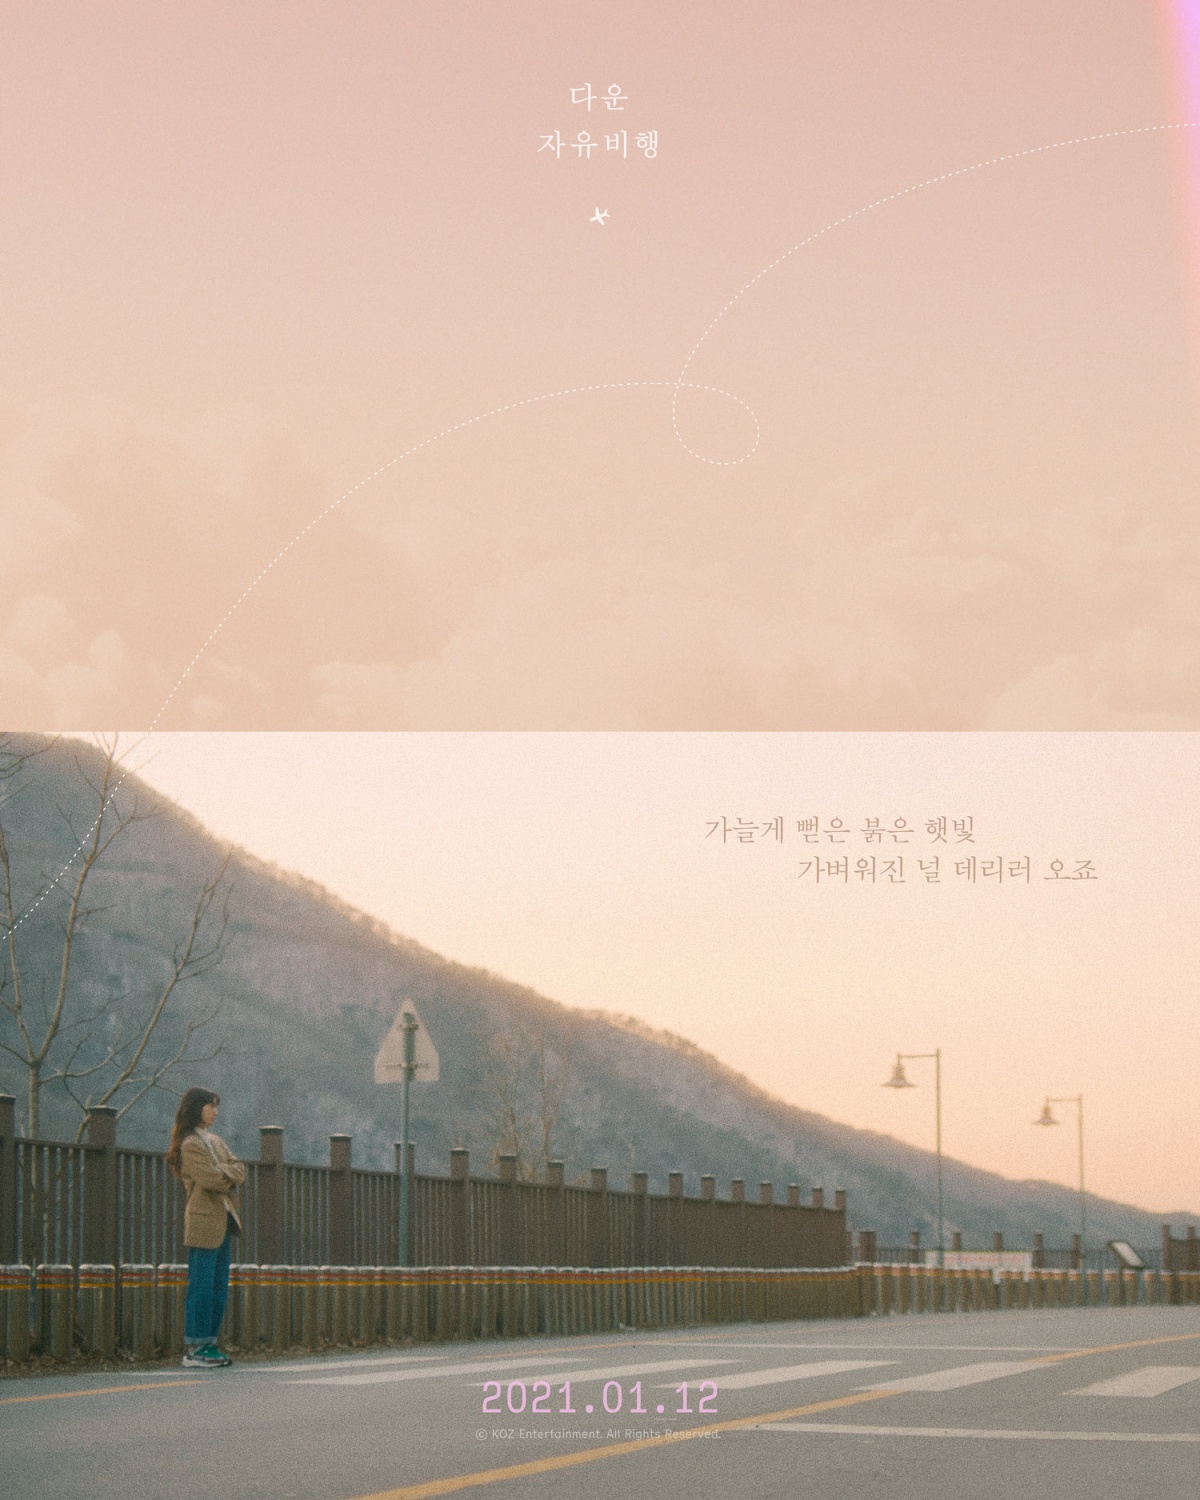 'Comeback' Dvwn, new song 'Free Flight' MV teaser released, Park Shin-hye support shooting